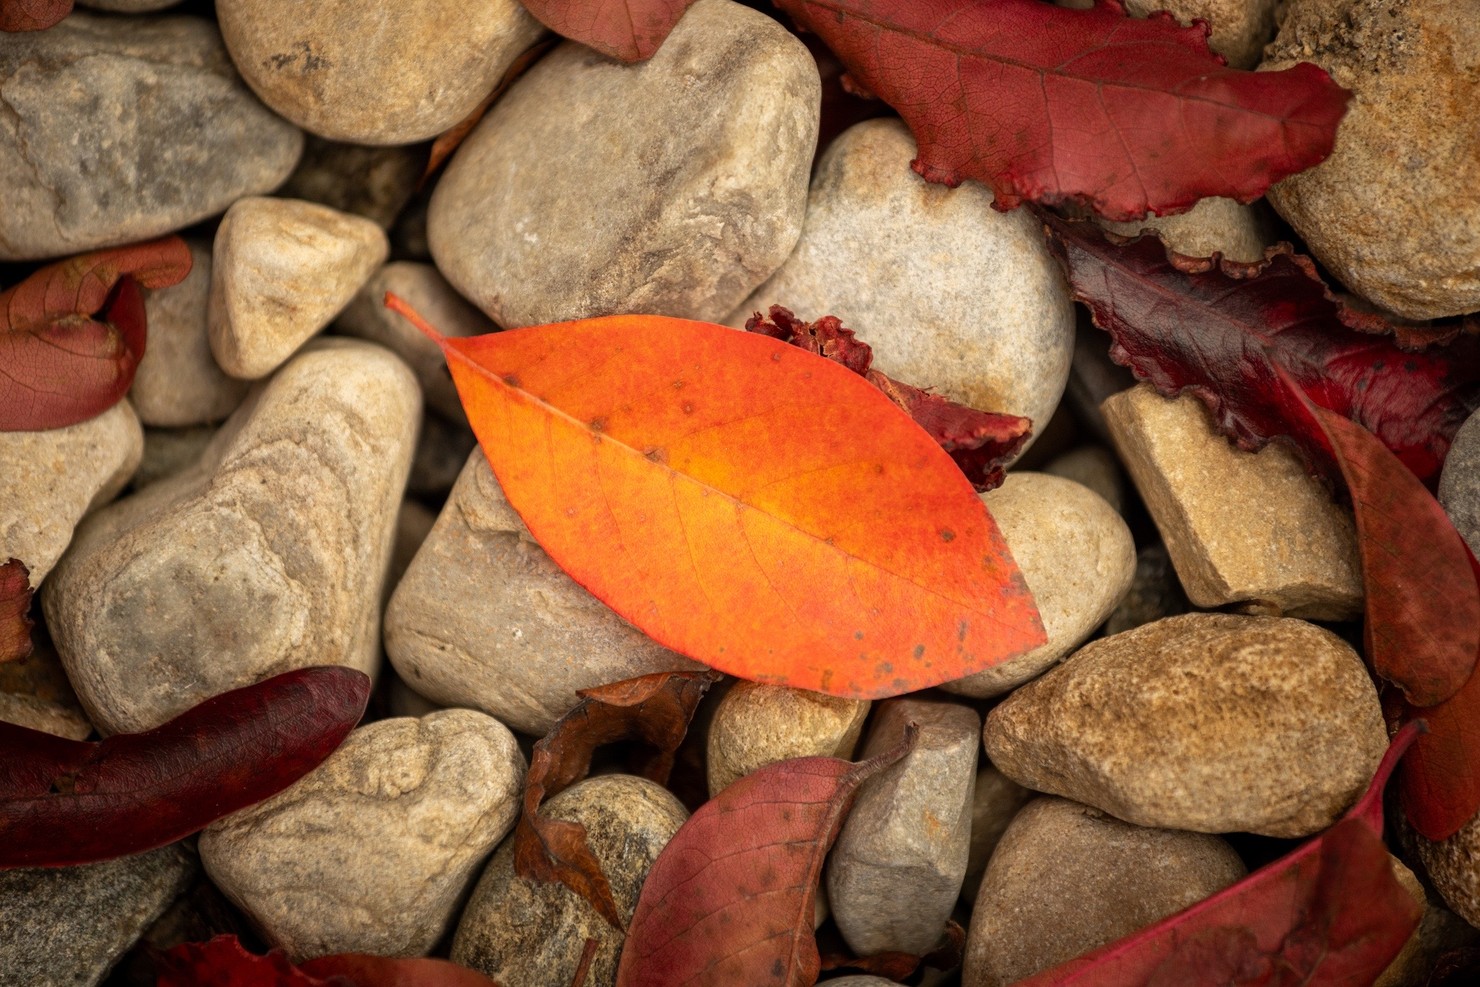 A vibrant orange leaf sitting on top of several rocks.